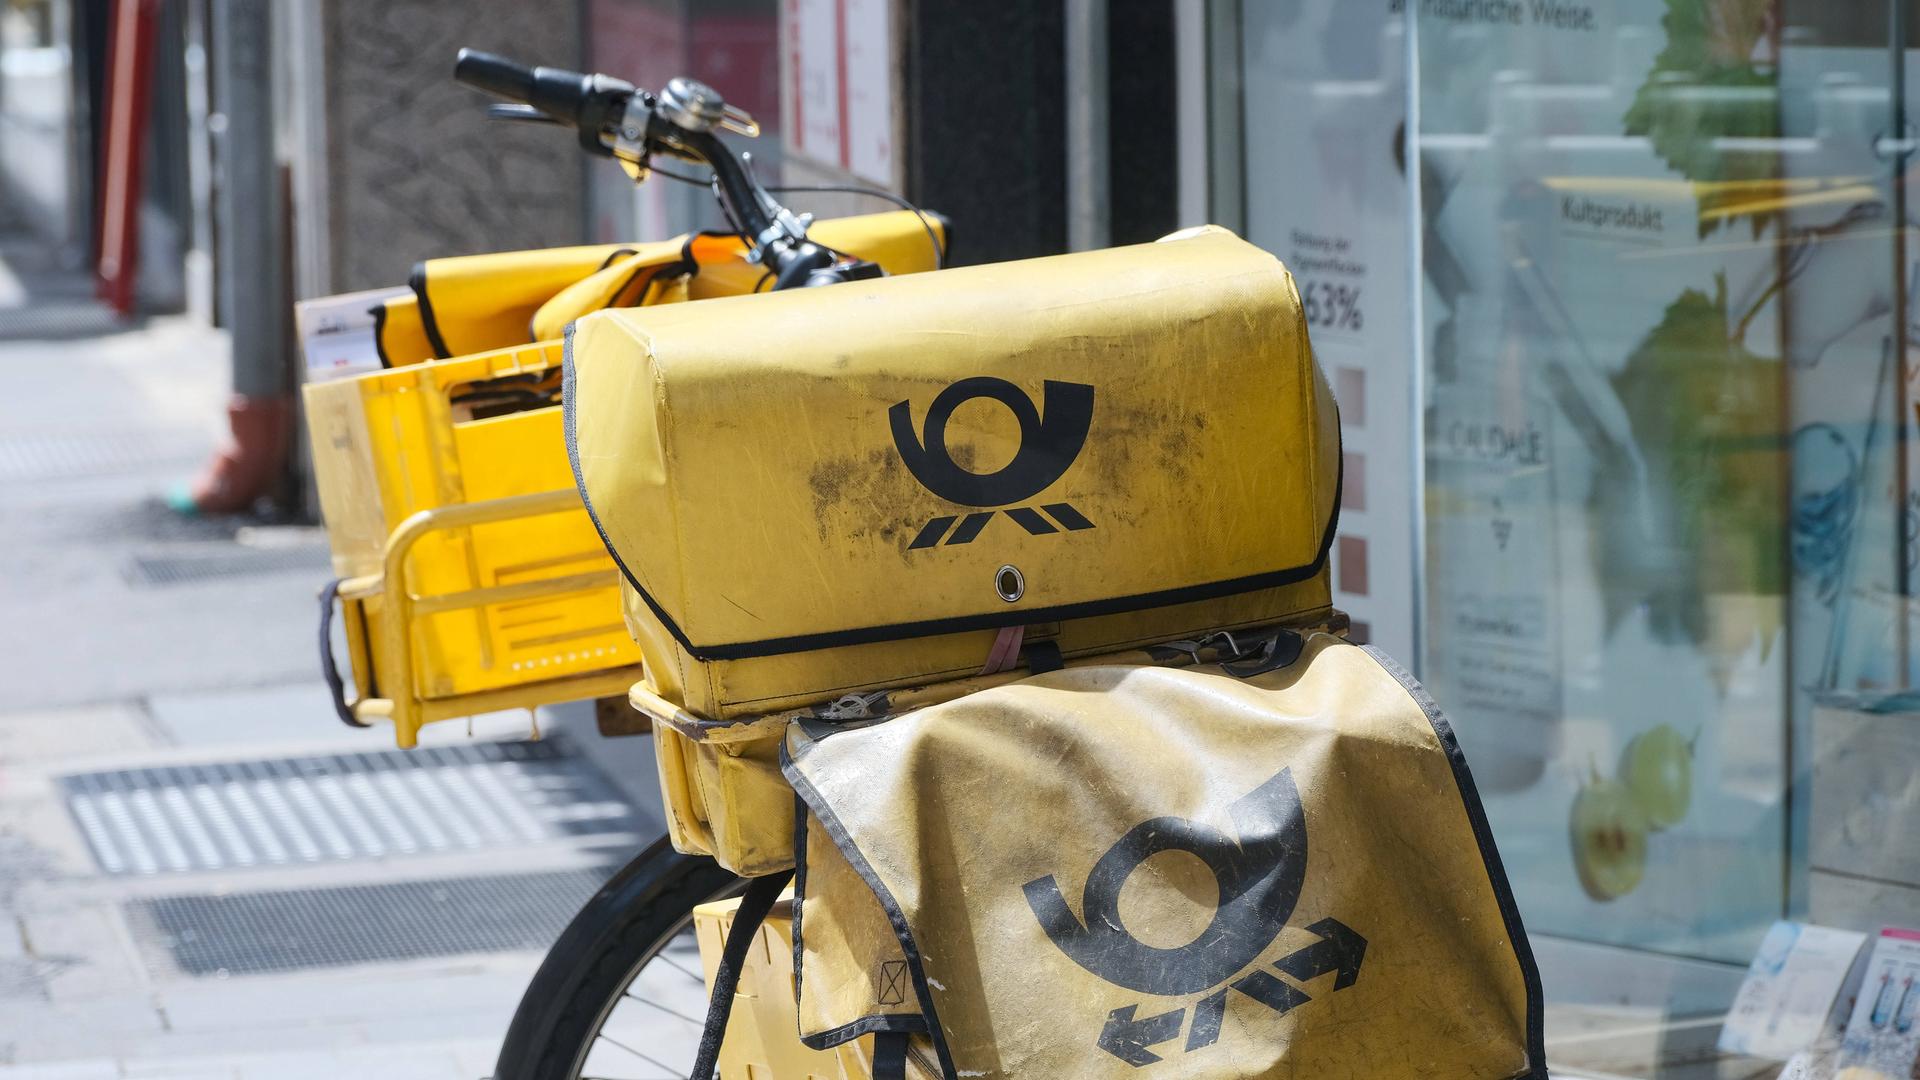 Zu sehen ist ein typisches, am Straßenrand abgestelltes gelbes Postfahrrad mit mehreren gelben Taschen und Boxen, in denen sich Zusendungen befinden.